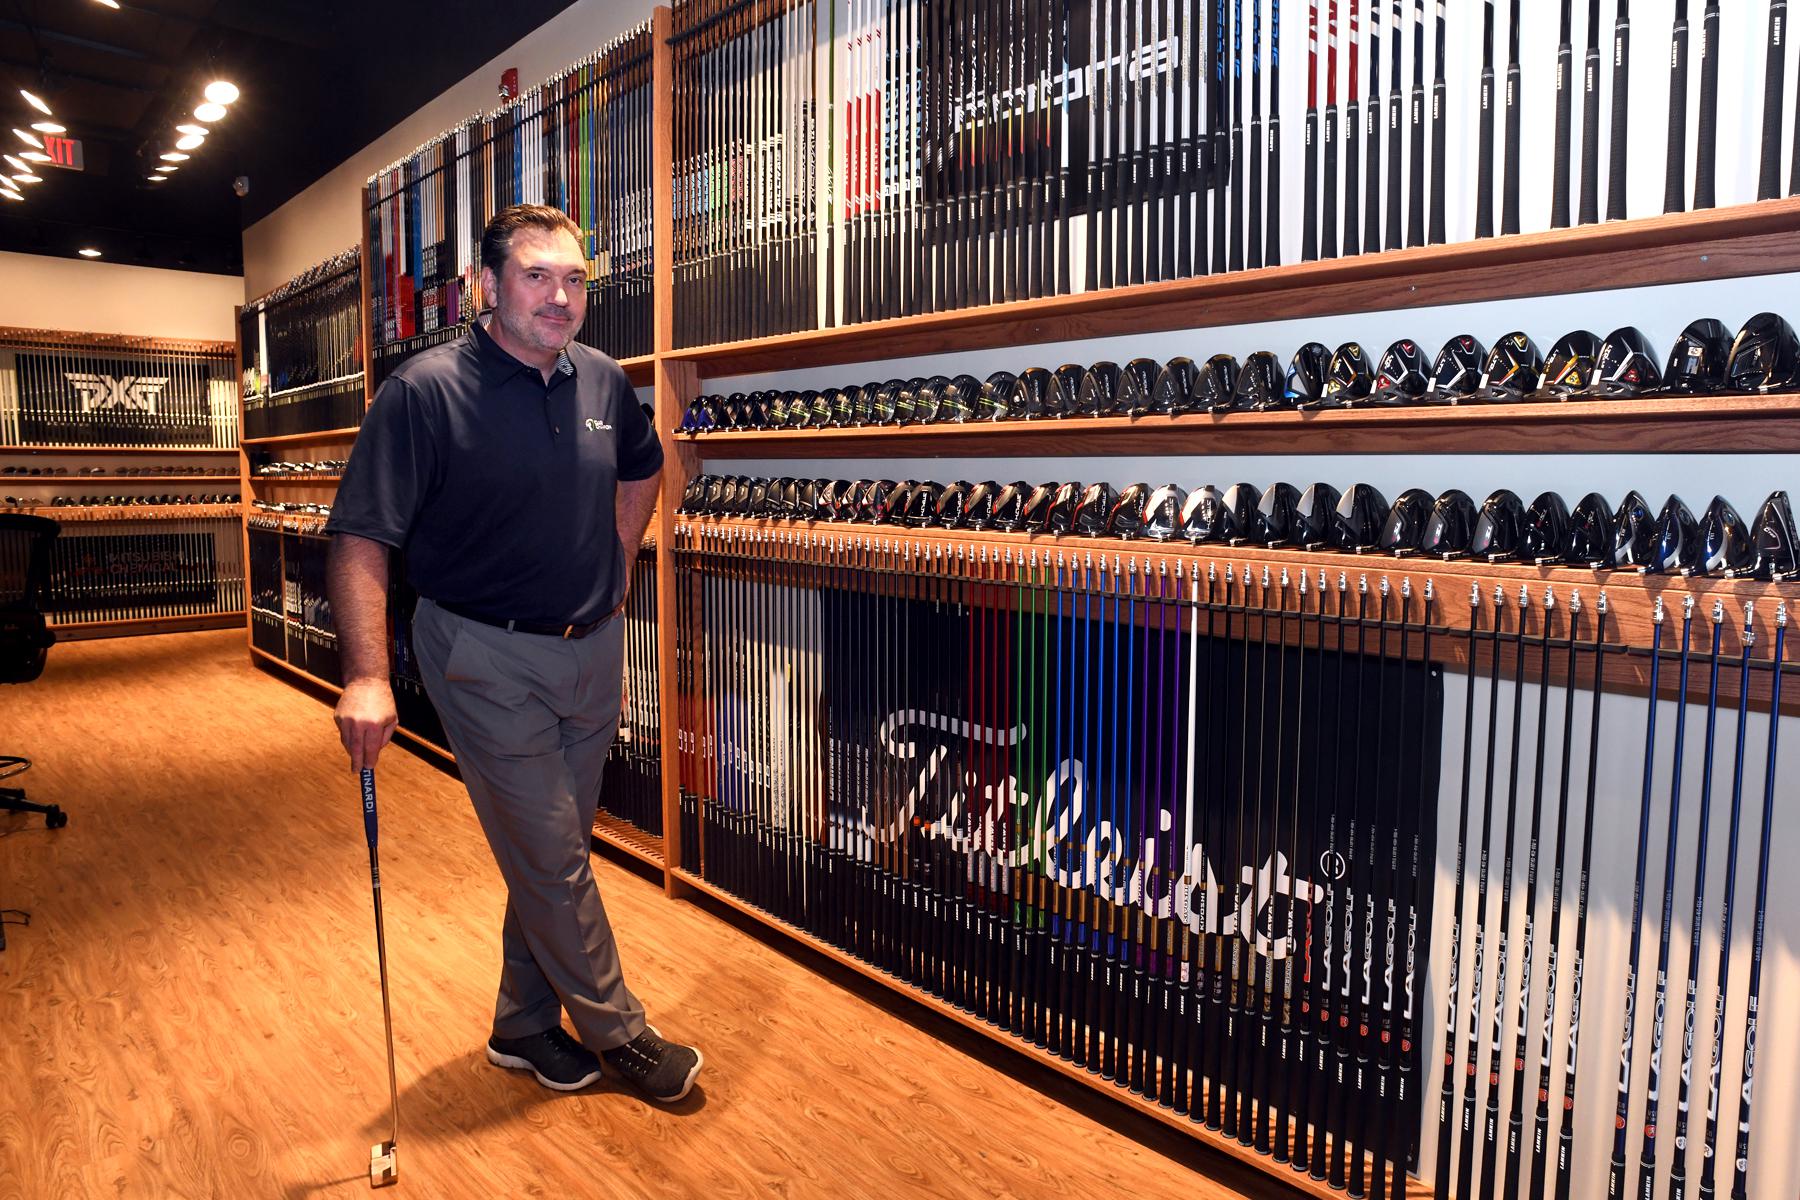 New custom golf shop opens in Westport